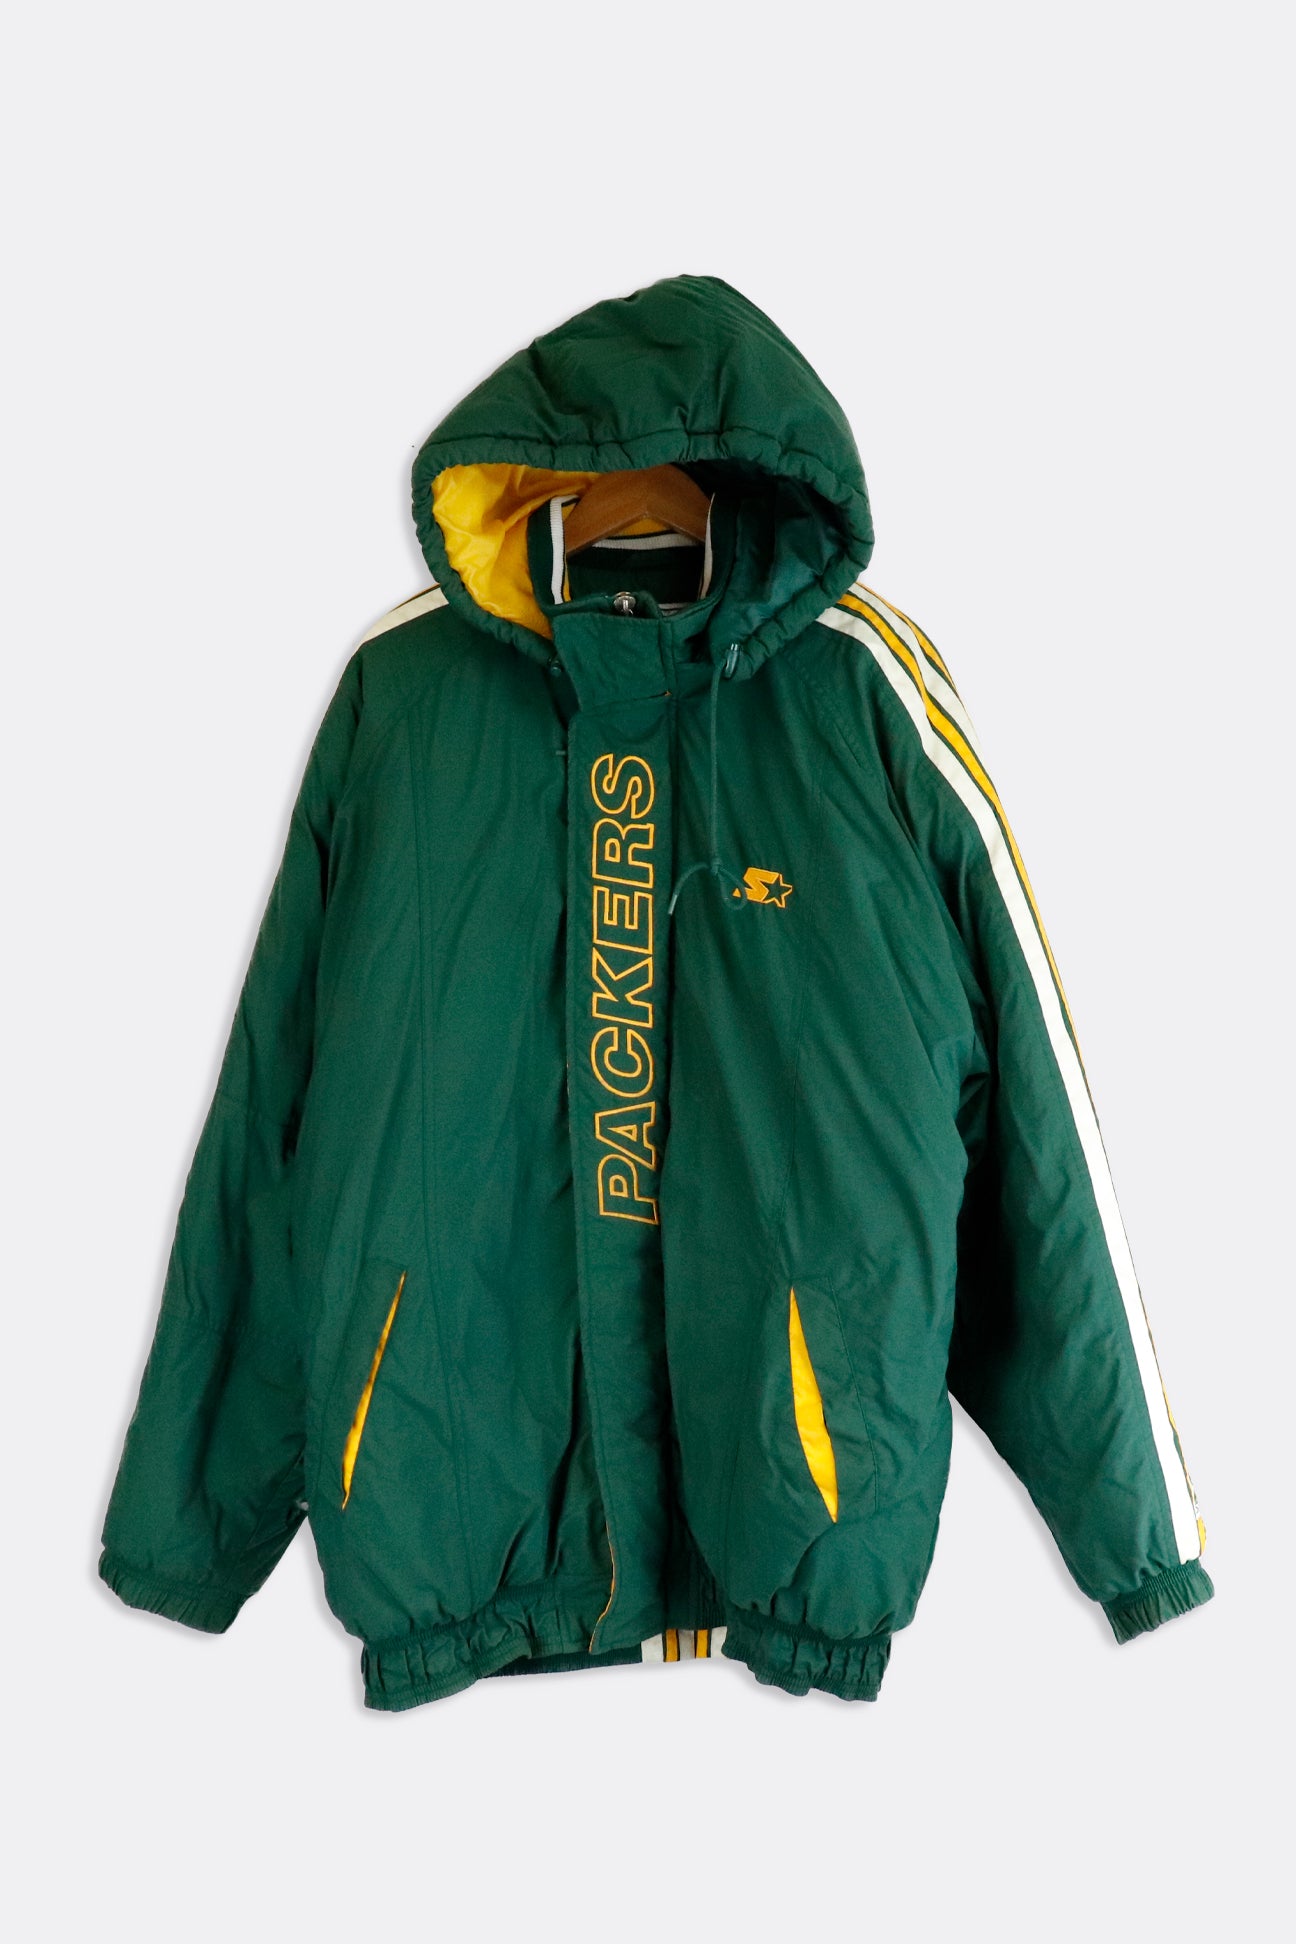 green bay starter jacket vintage